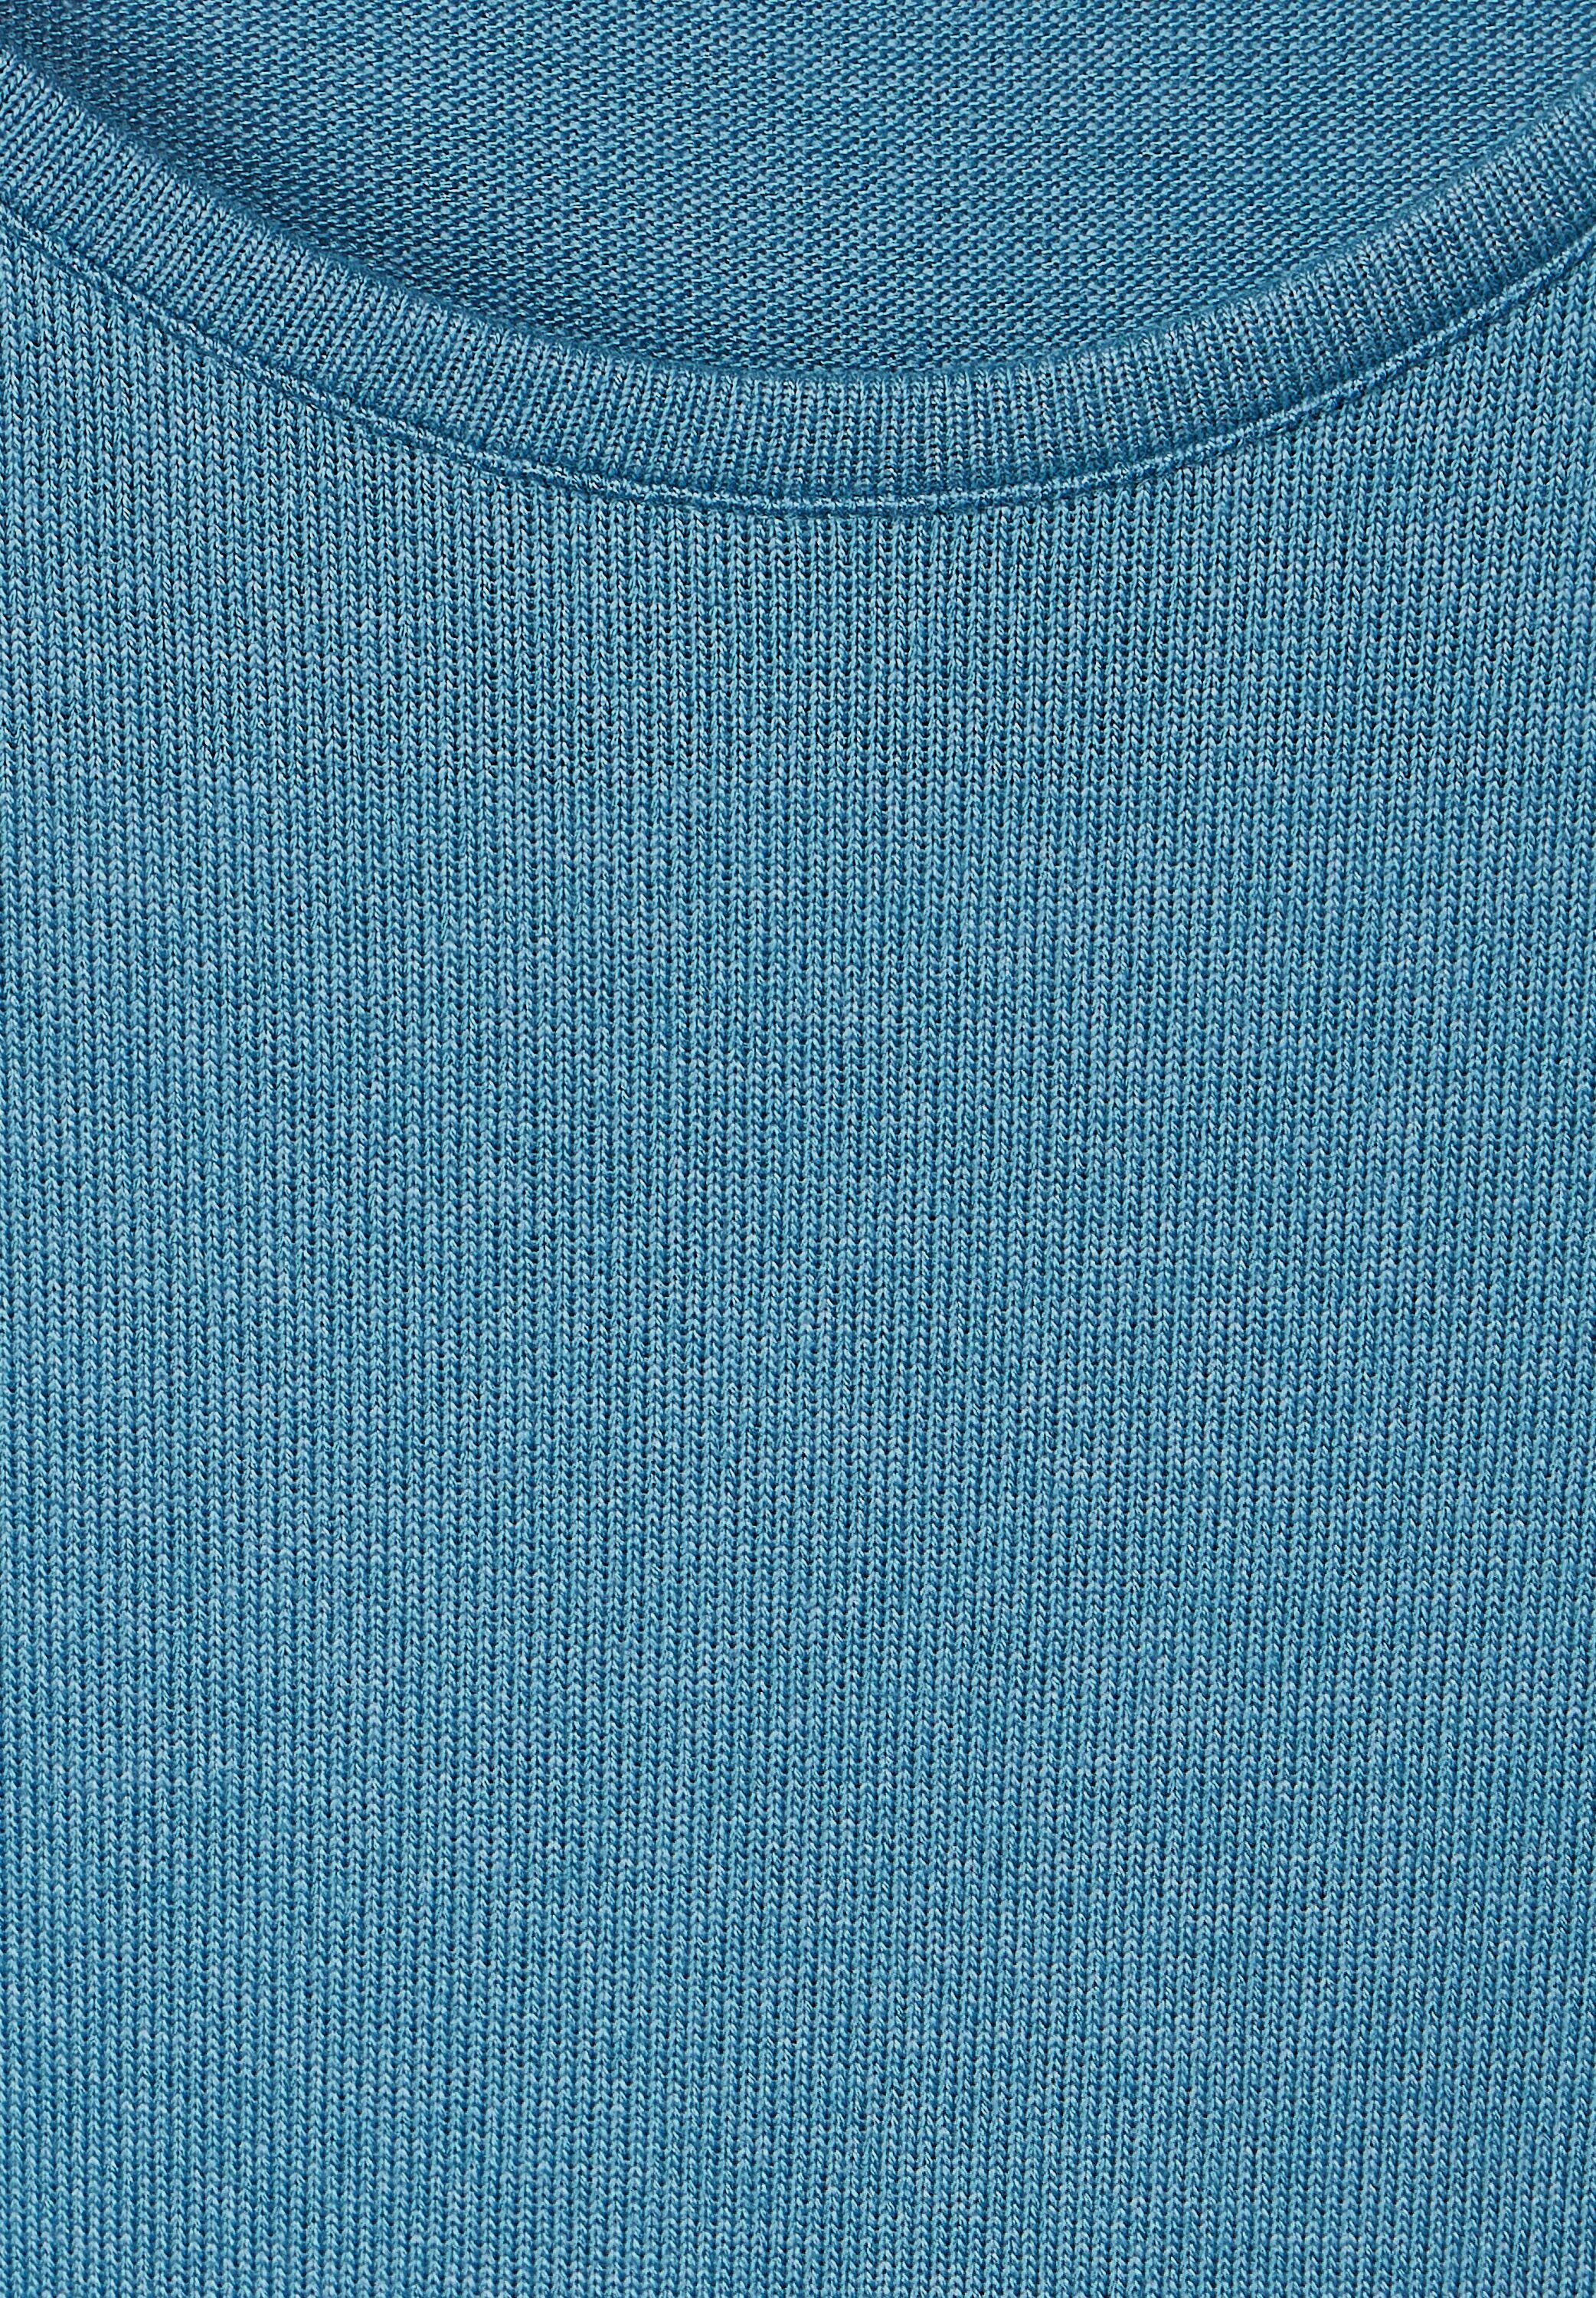 adriatic 3/4-Arm-Shirt Cecil Materialmix blue softem aus